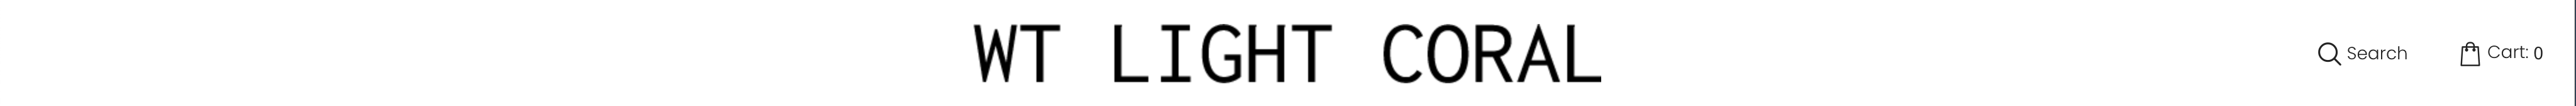 lightcoral-header